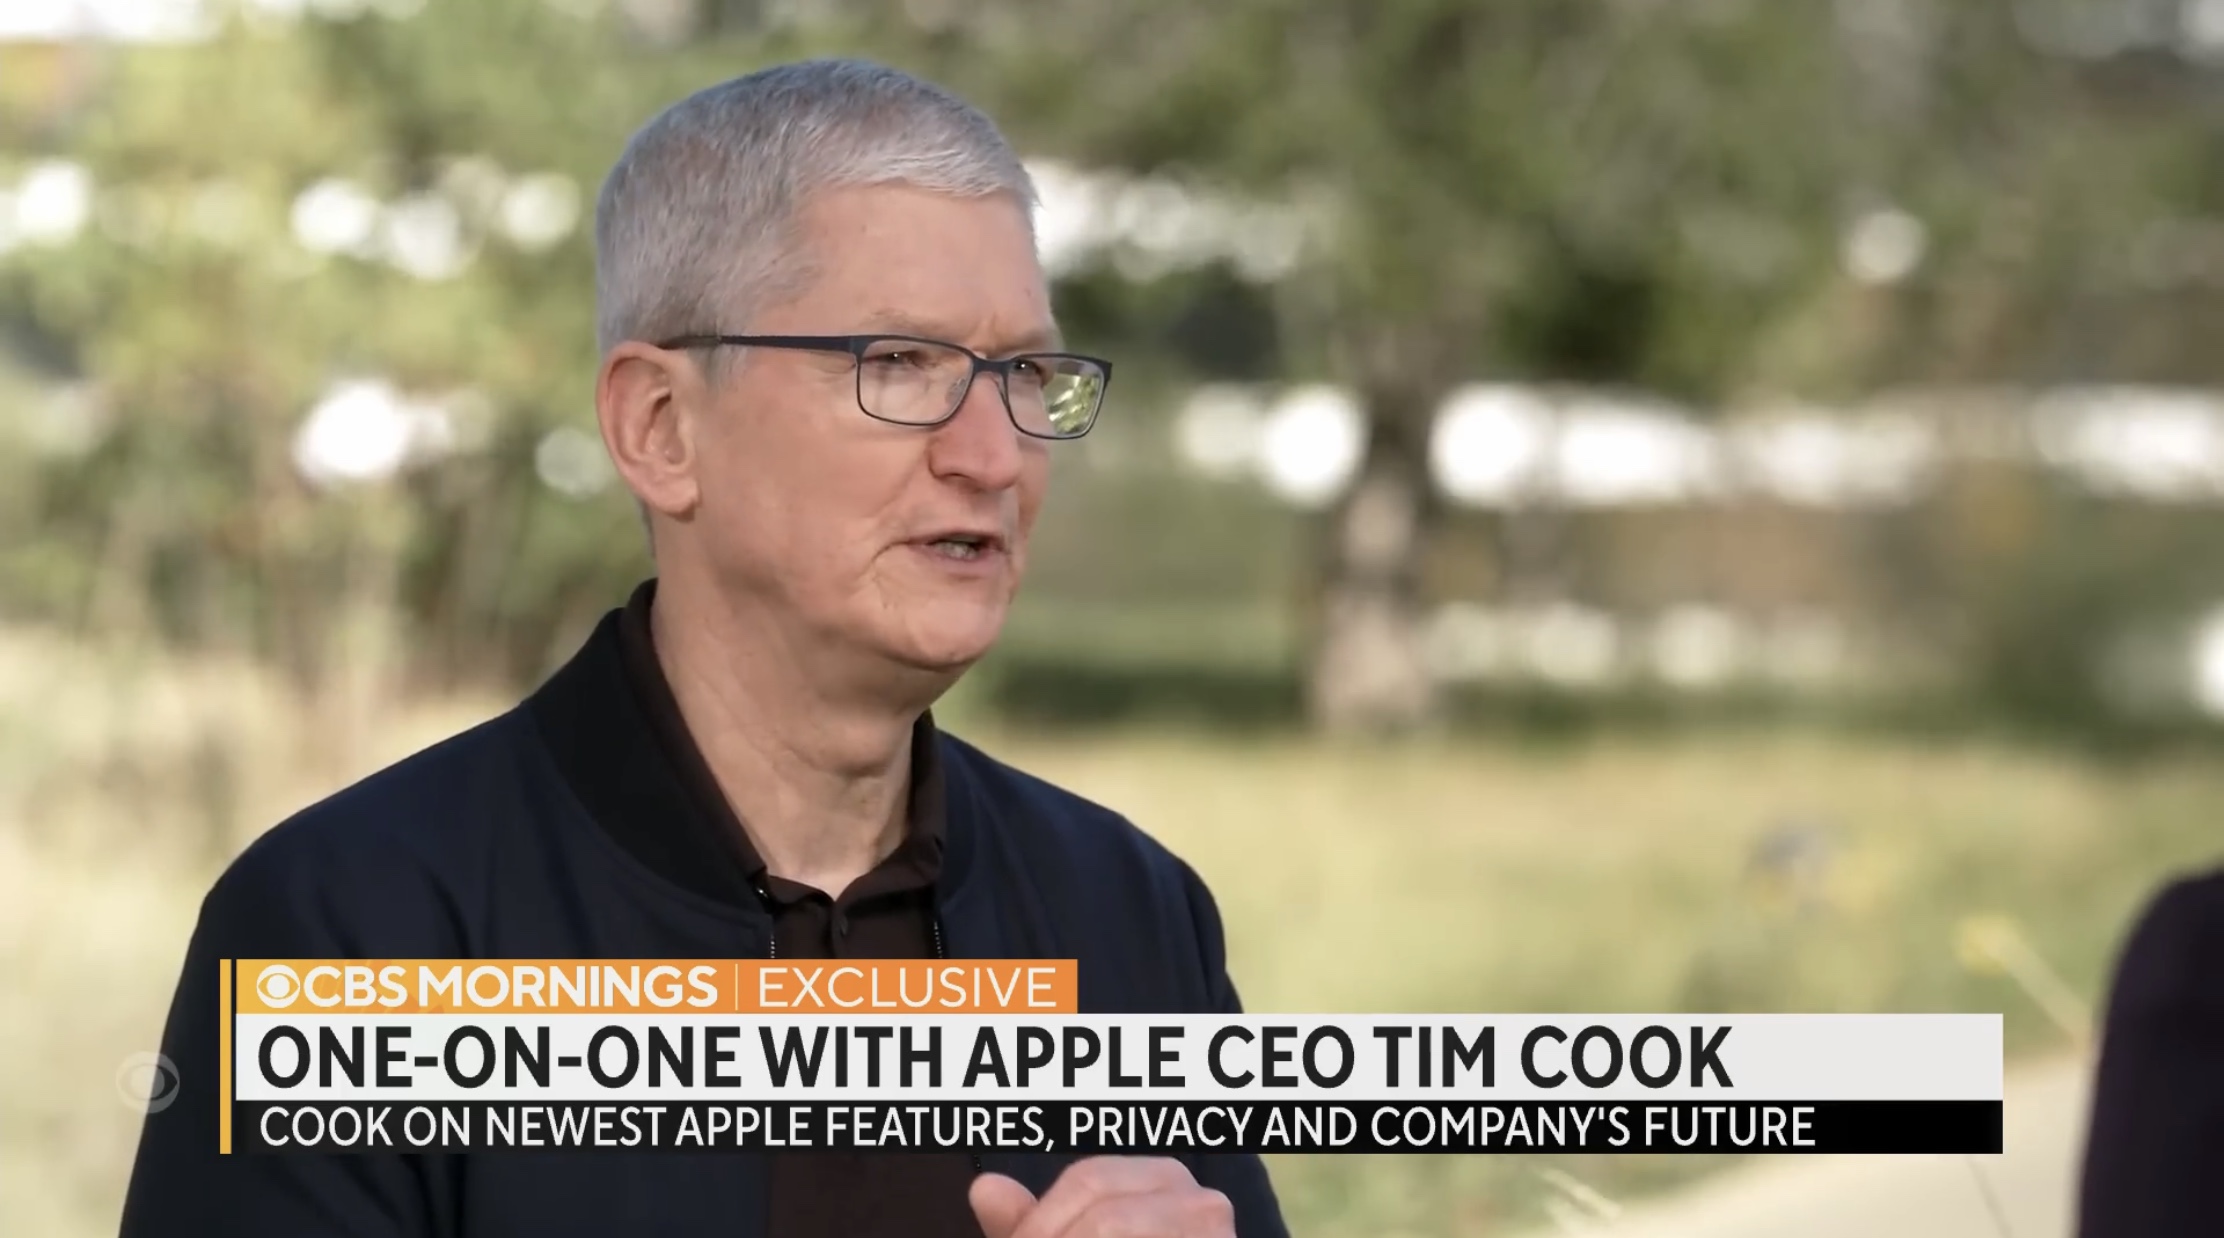 Apple старается максимально обезопасить своих пользователей даже с самым небольшим объёмом данных, и это их миссия, как считает Тим Кук.